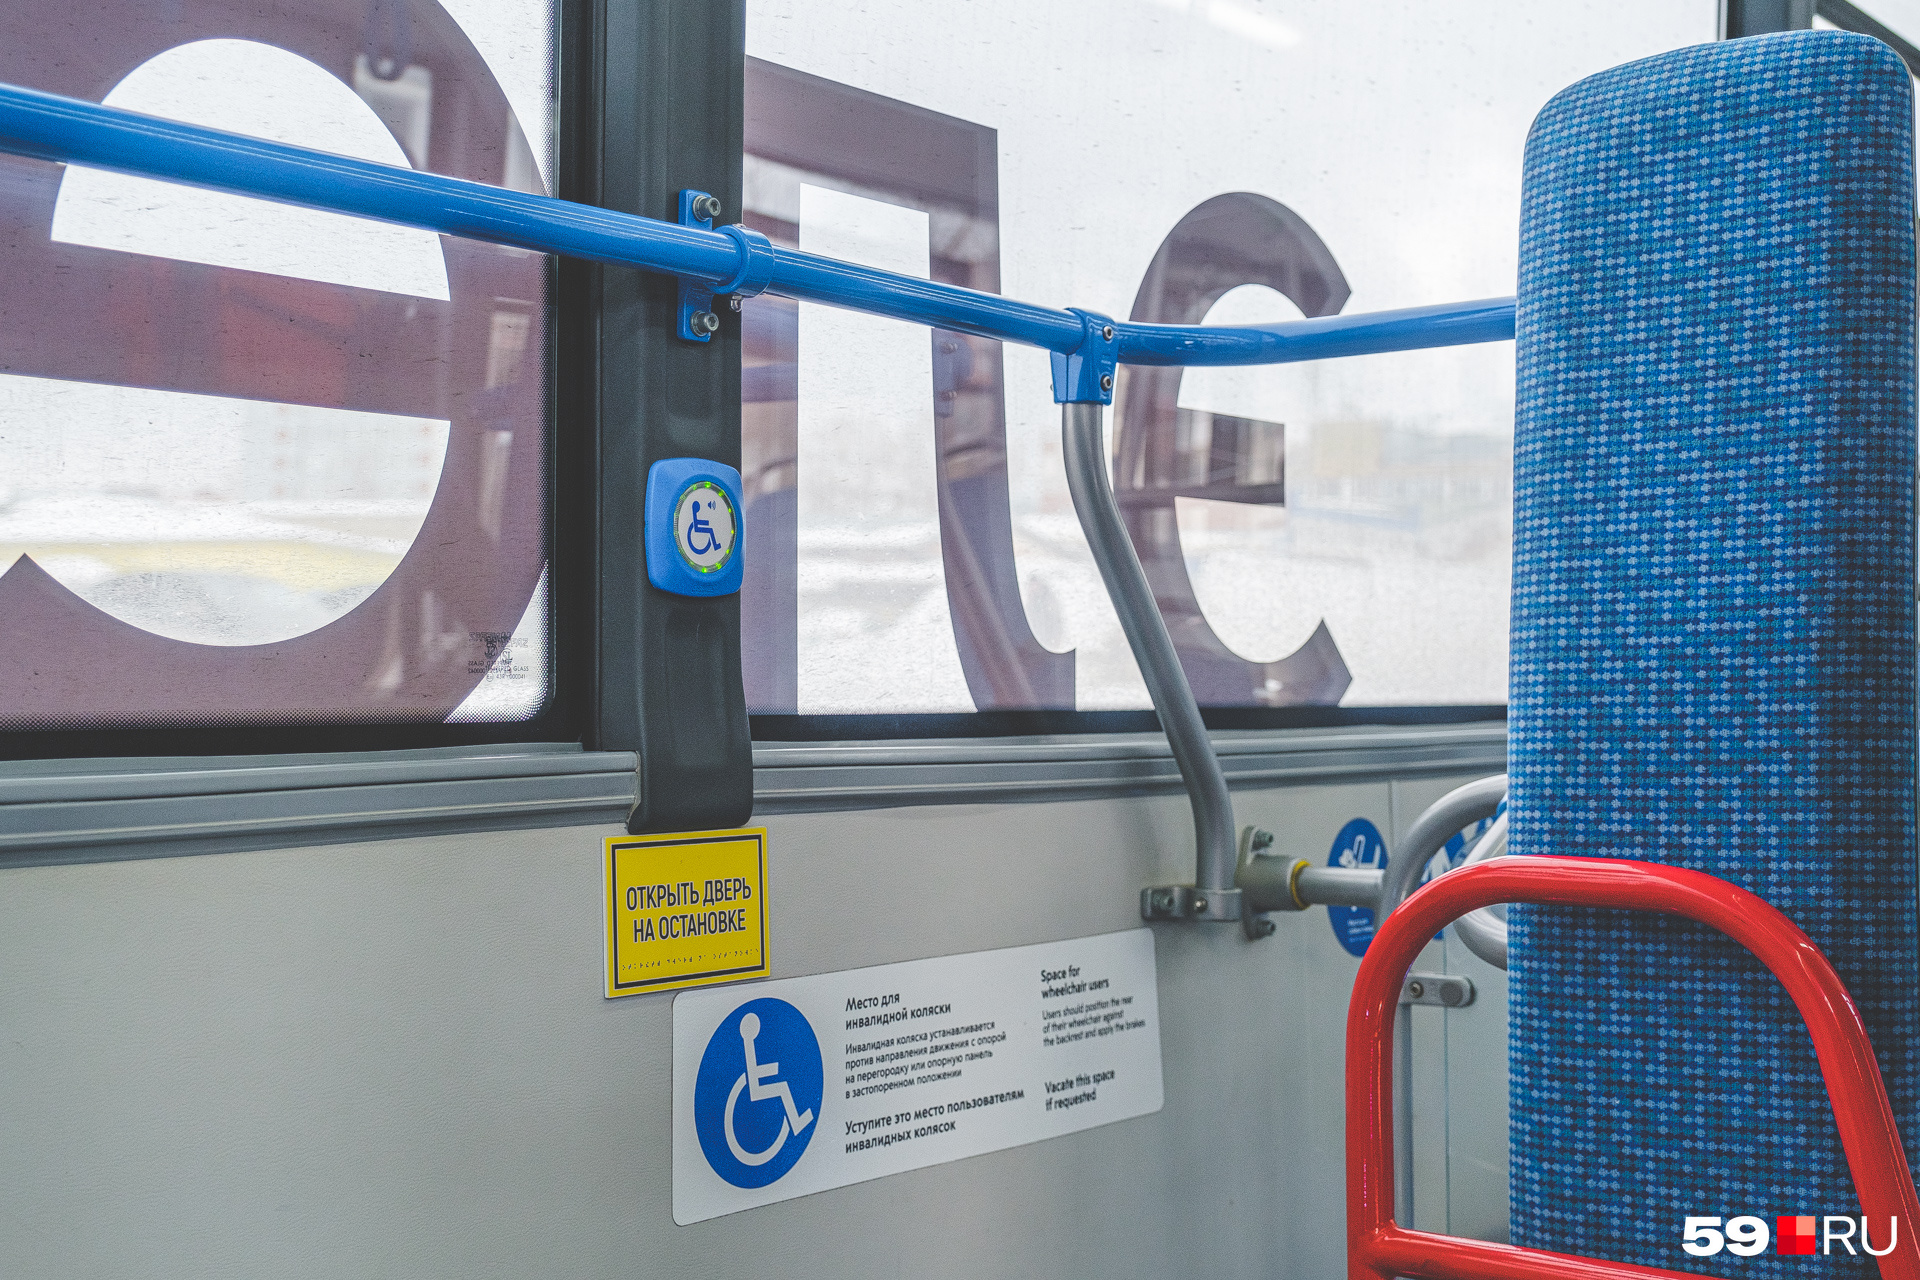 Отдельно продумано использование электробуса пассажирами с ограниченными возможностями